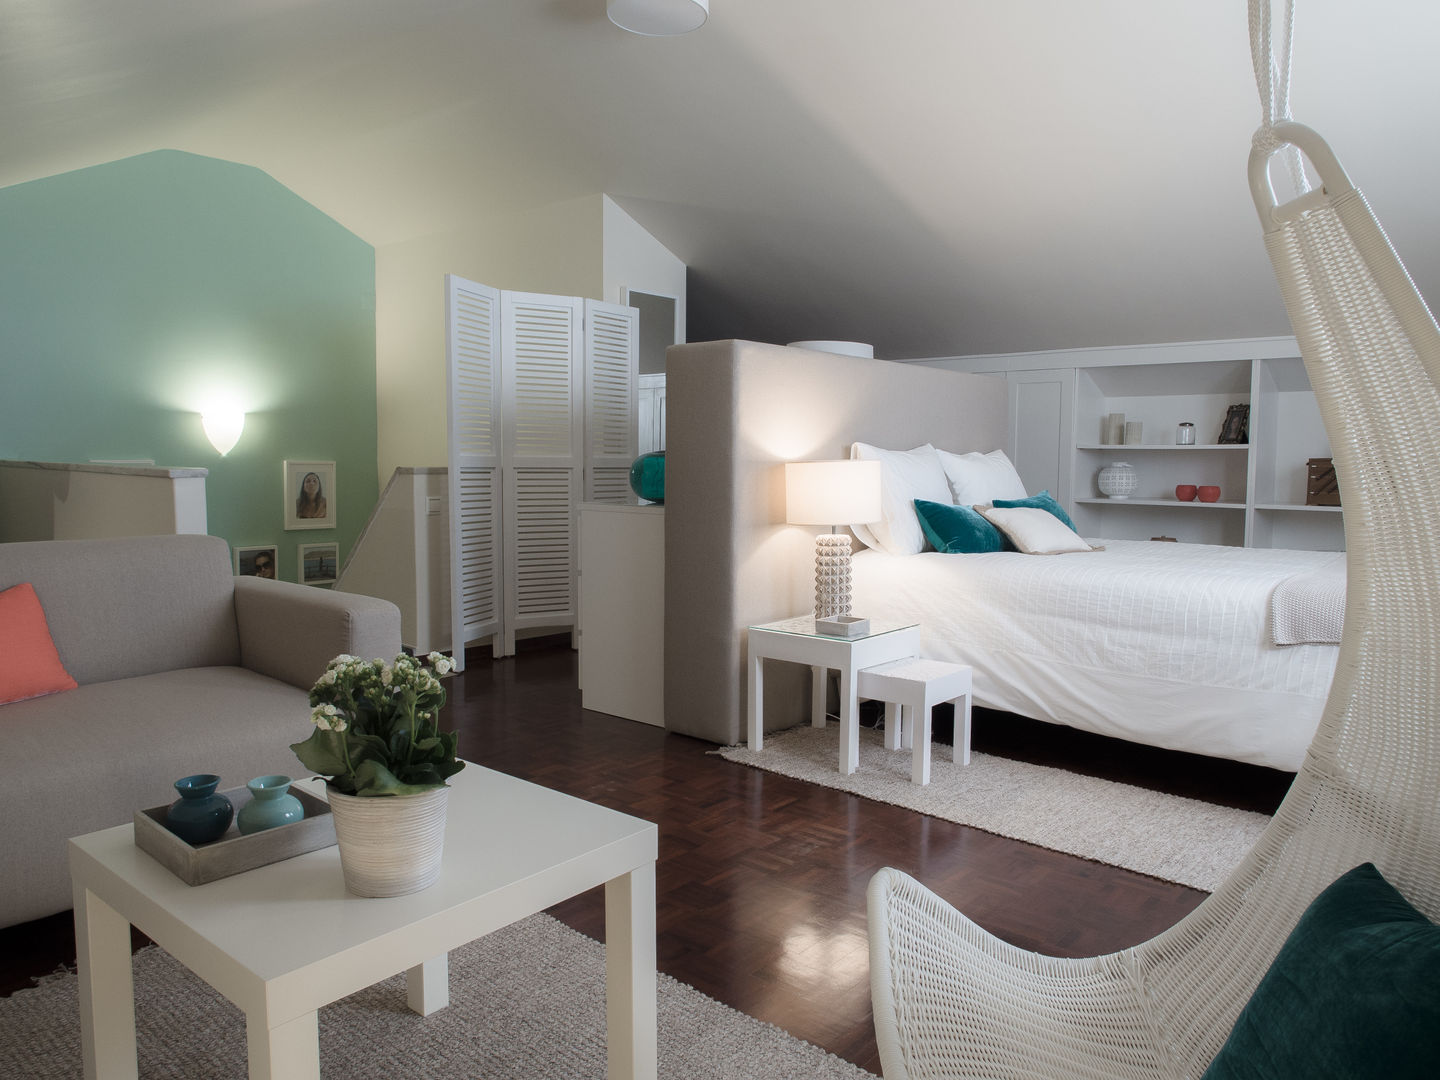 DP Bedroom - Sintra, MUDA Home Design MUDA Home Design Habitaciones modernas